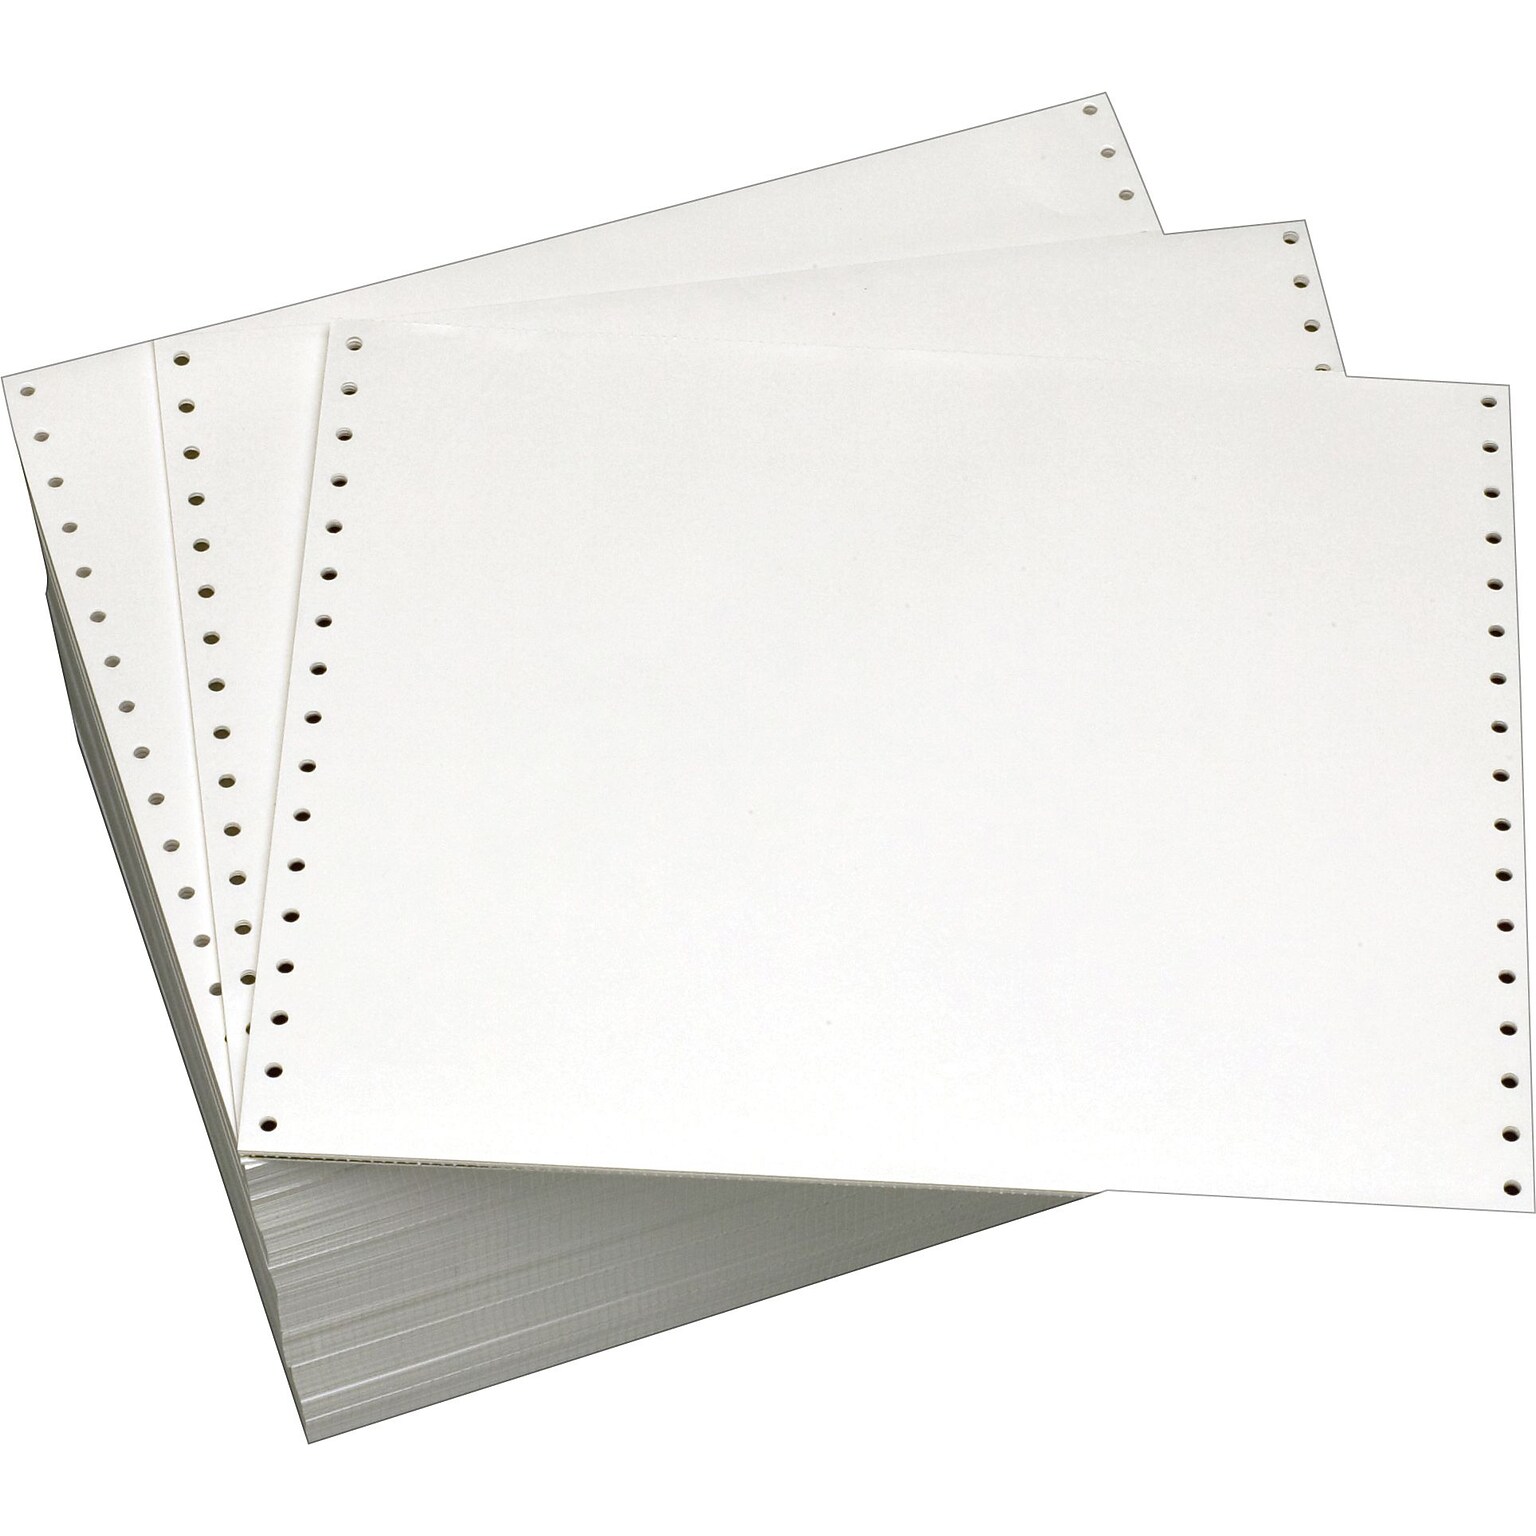 Staples® Bond Continuous Form Paper, 14-7/8 x 11, 20 lb, 100 Bright, White, 2700 Sheets/Carton (177121)